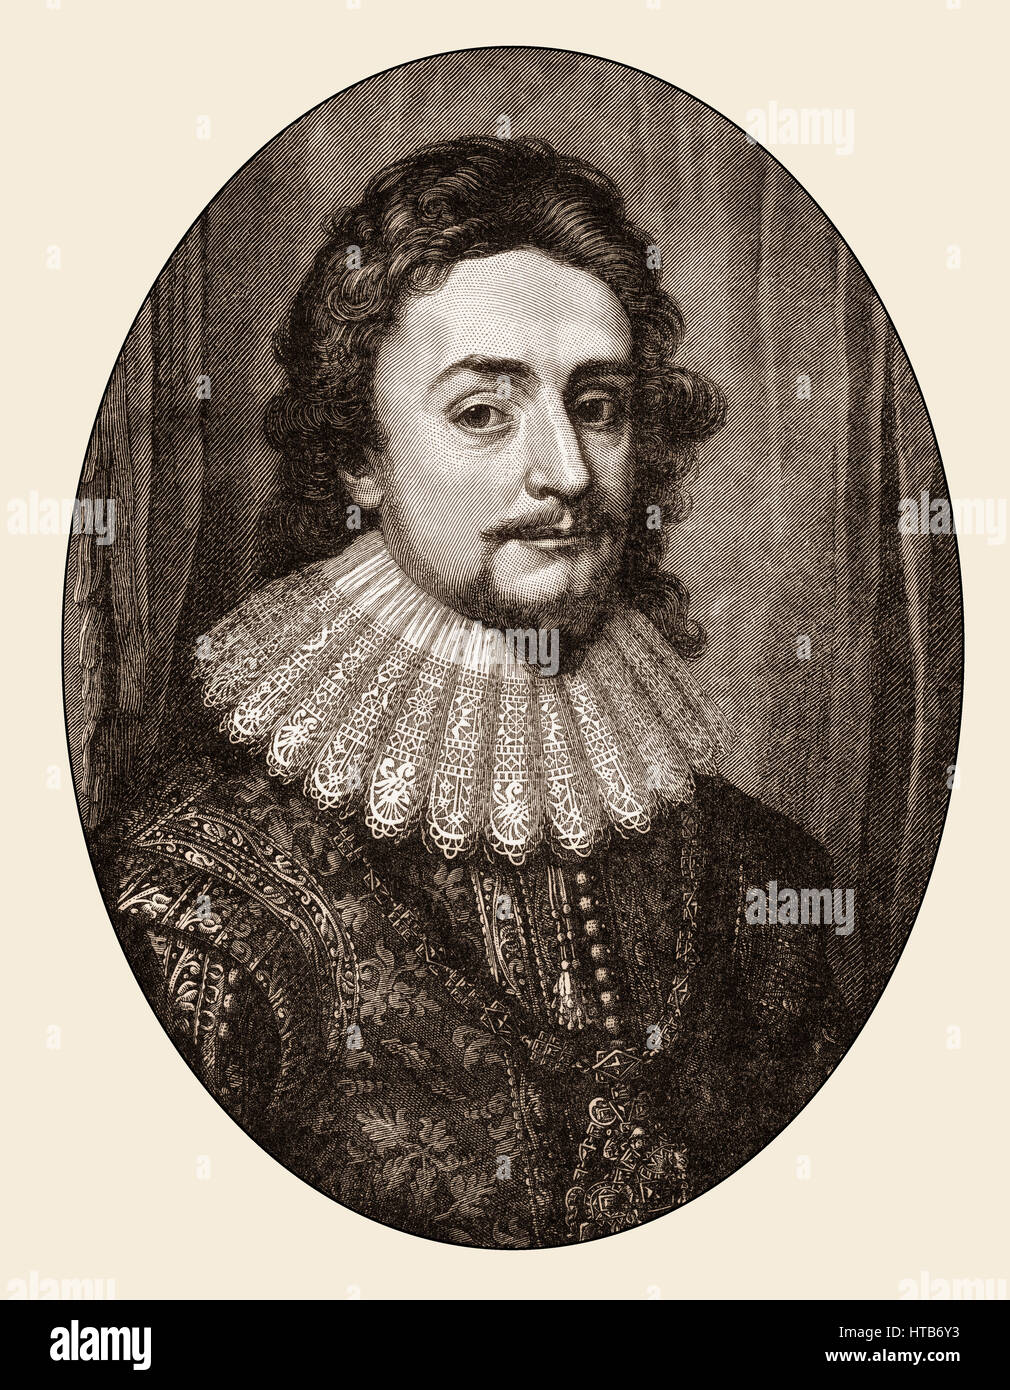 Federico V, elector palatino, 1596-1632 Foto de stock